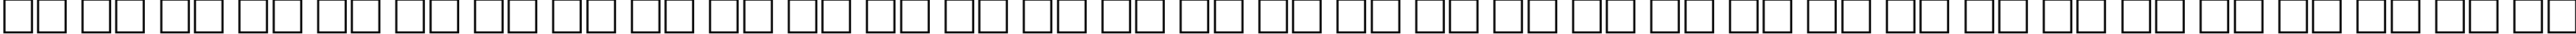 Пример написания русского алфавита шрифтом IsadoraCaps